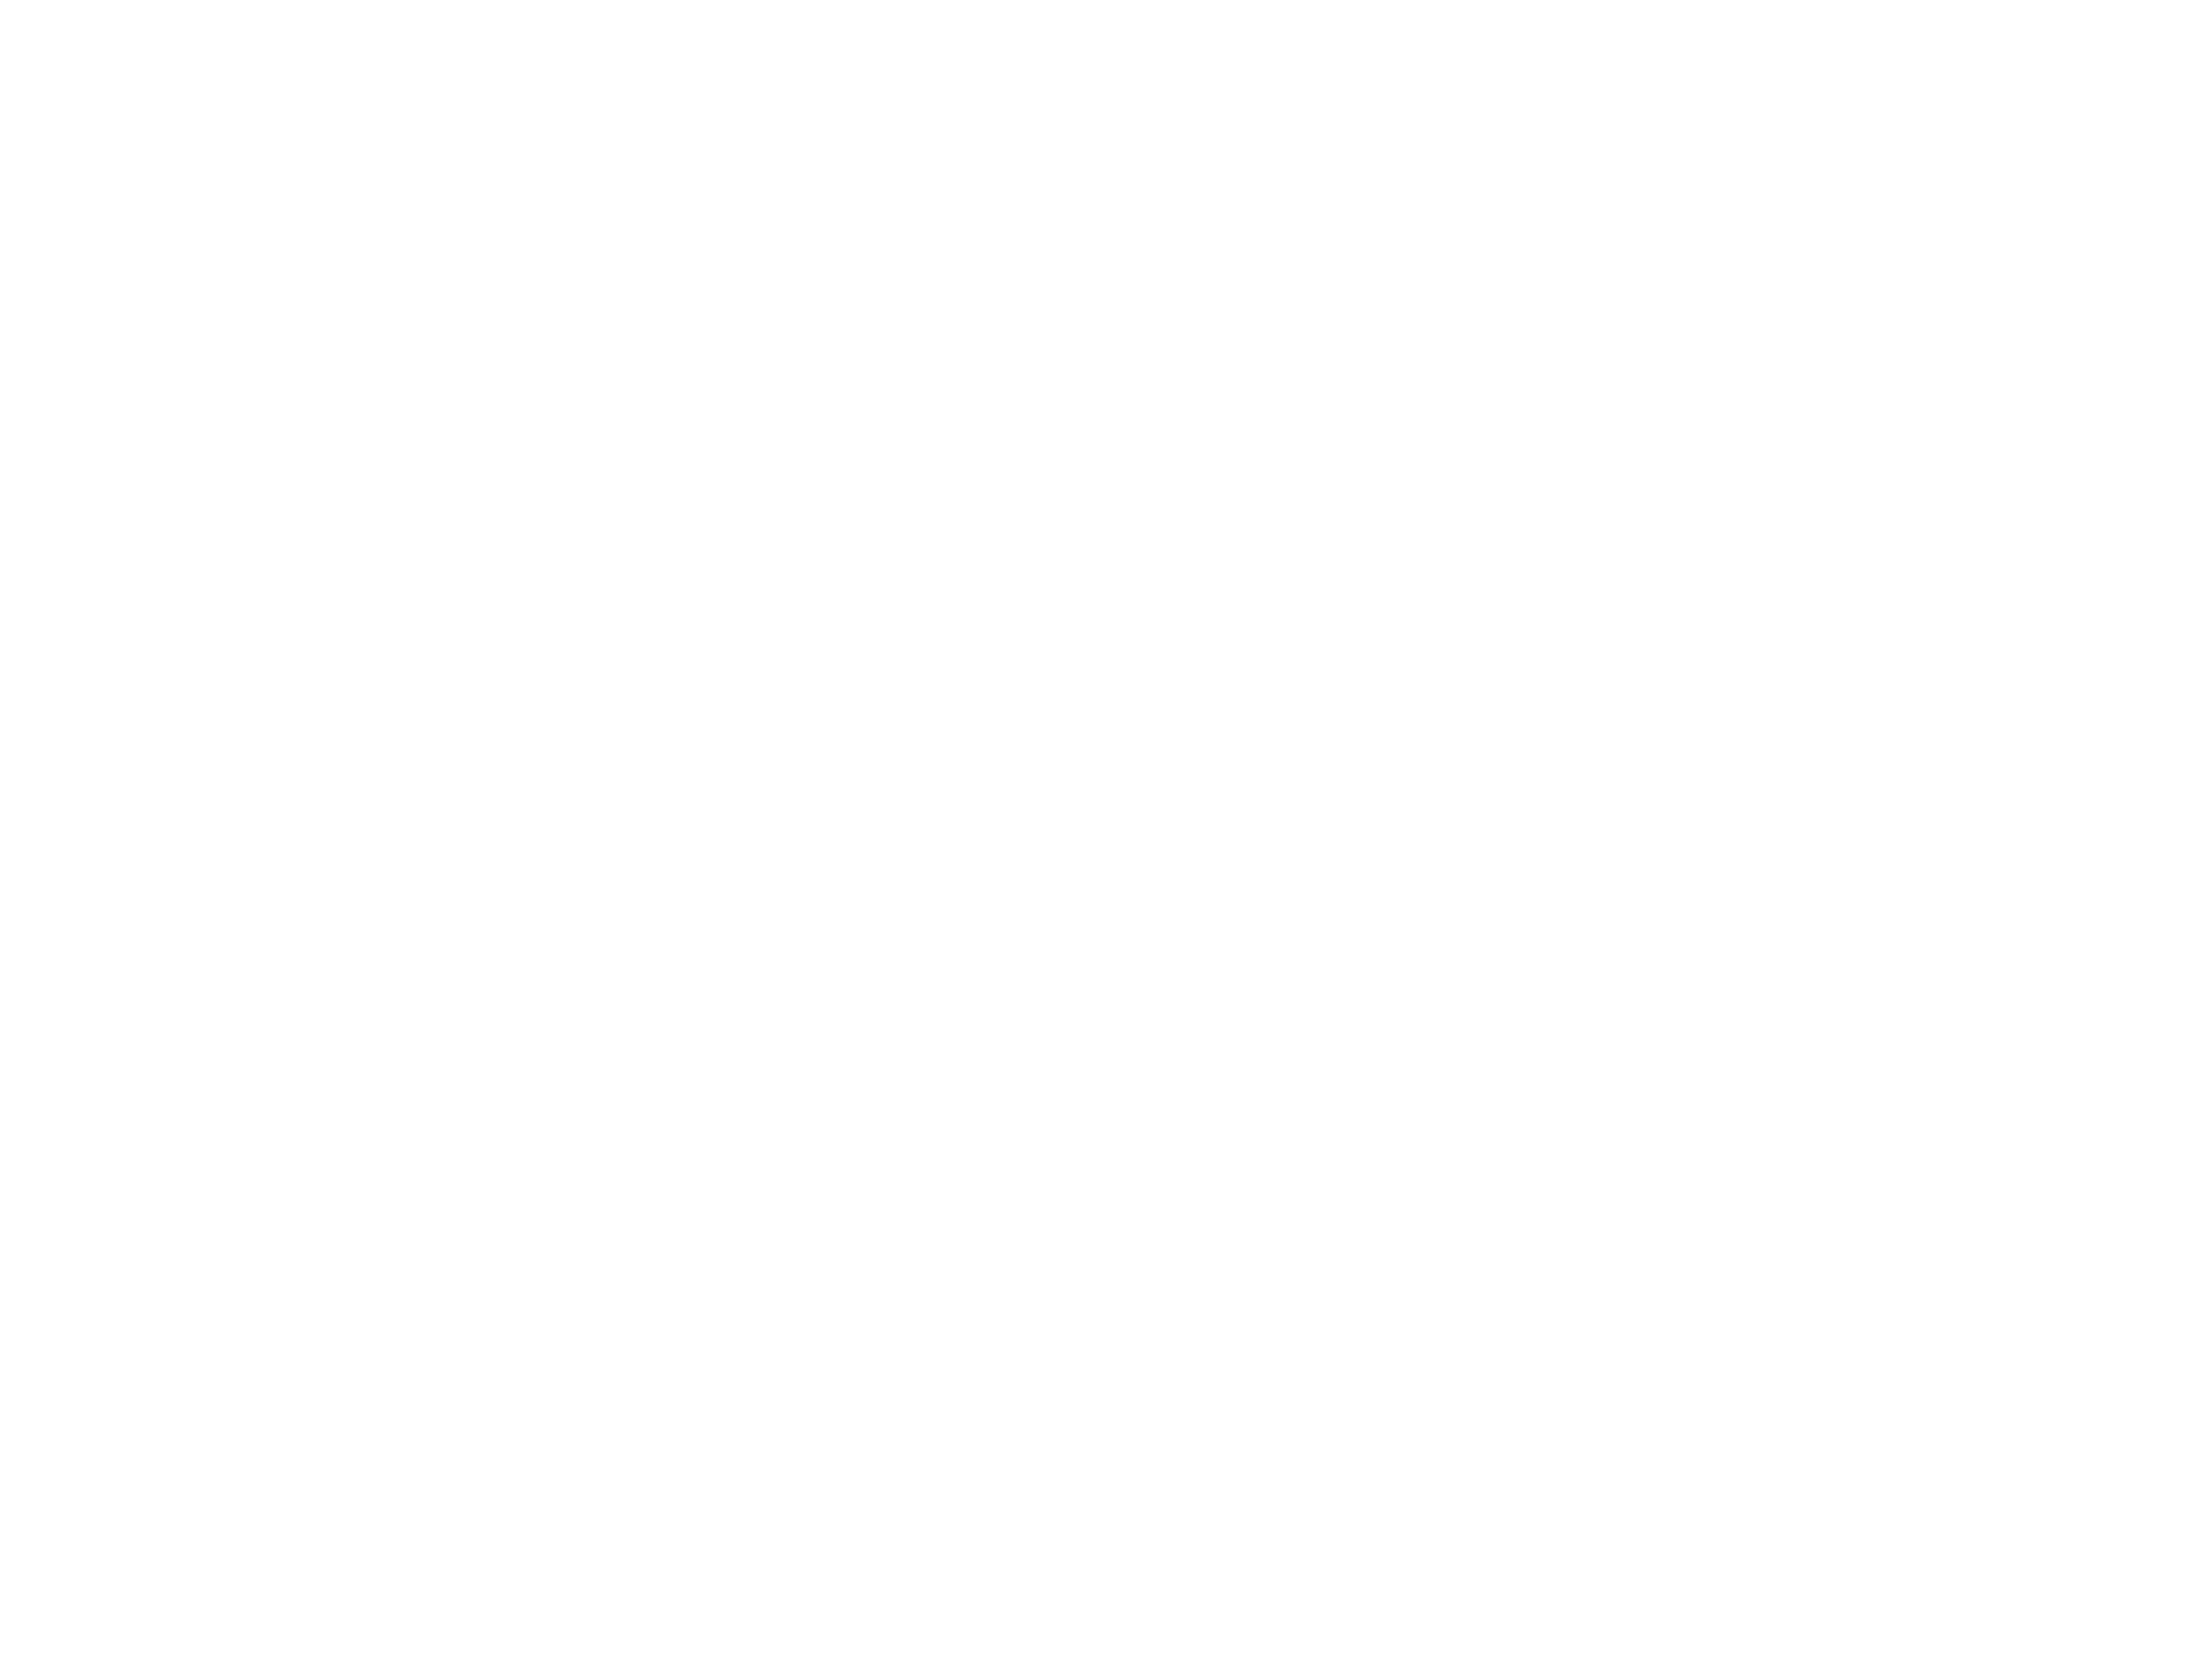 Logo Interbanking